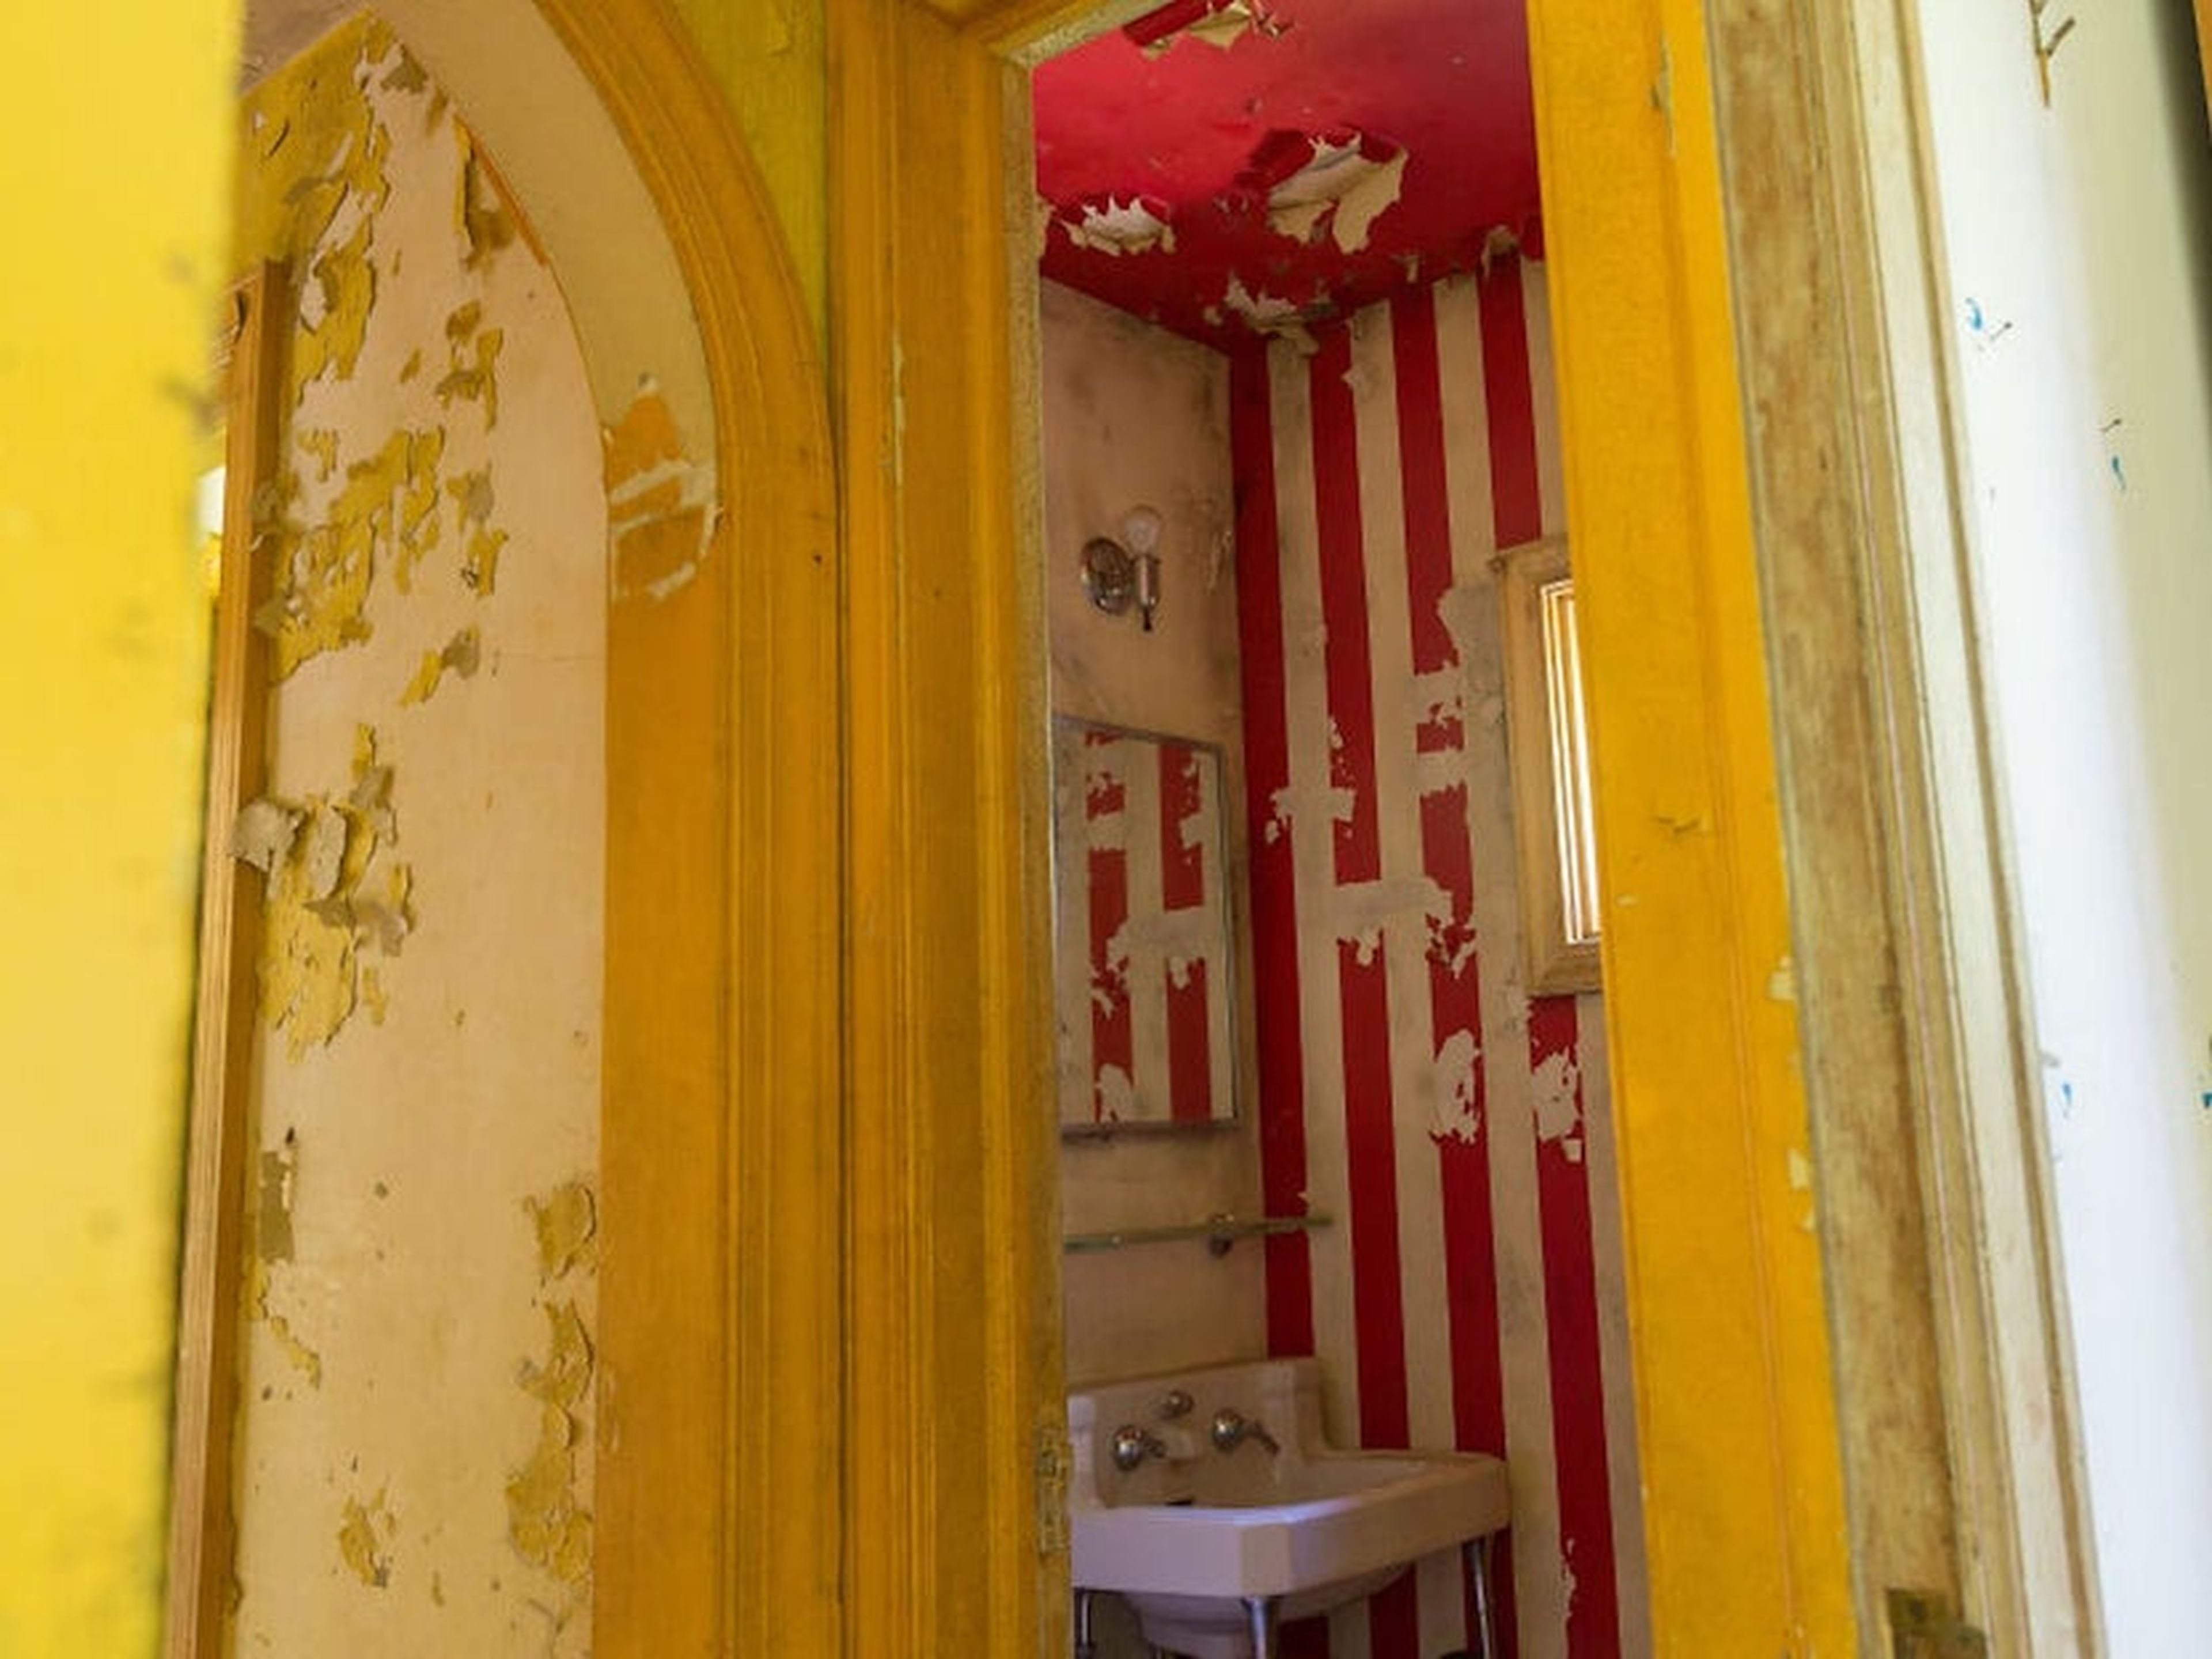 Hasta el baño estaba decorado con rayas de temática circense.